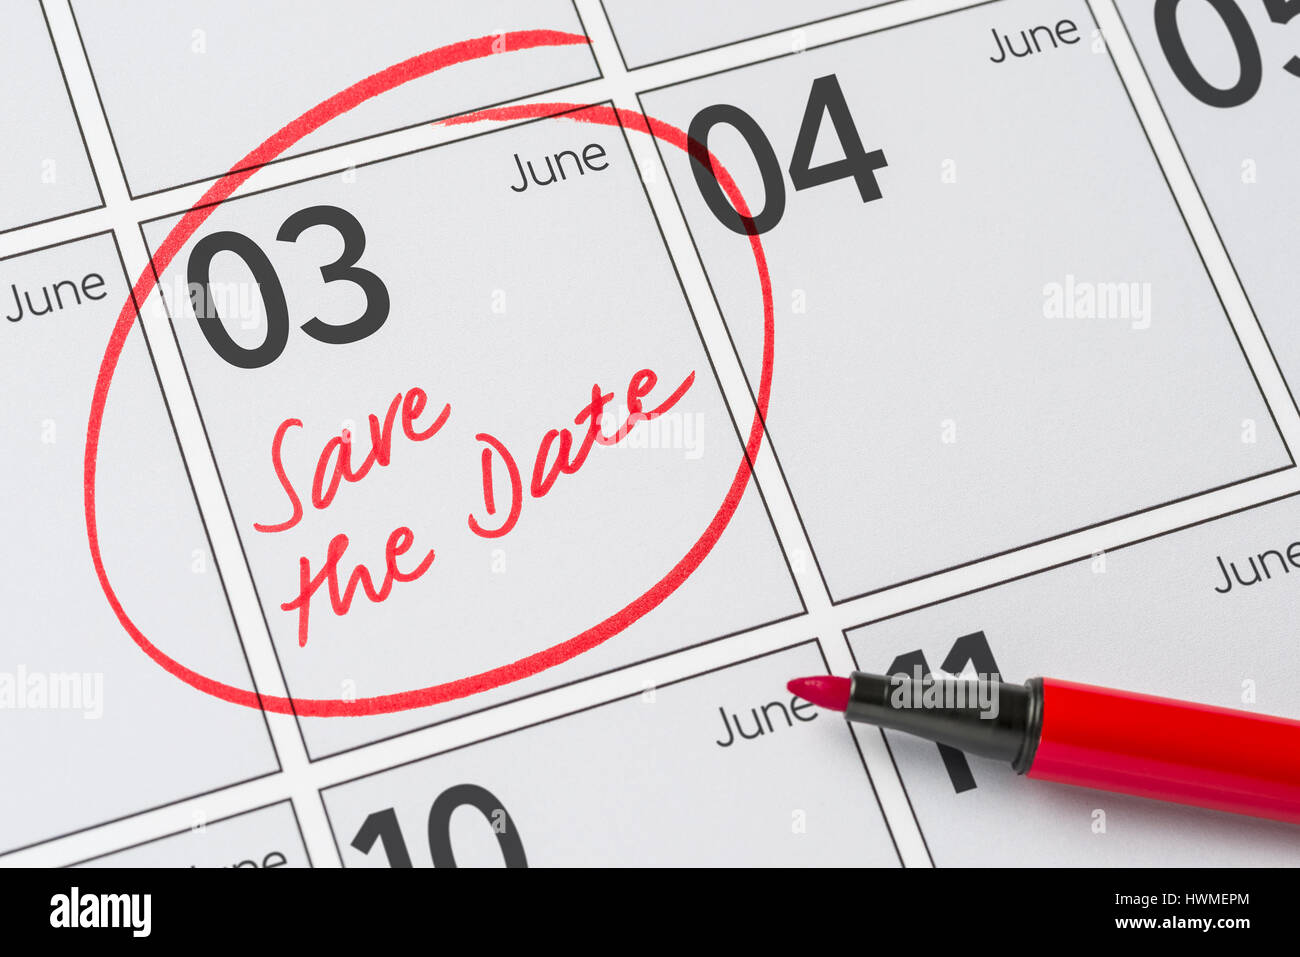 Enregistrer la date inscrite sur un calendrier - juin 03 Banque D'Images